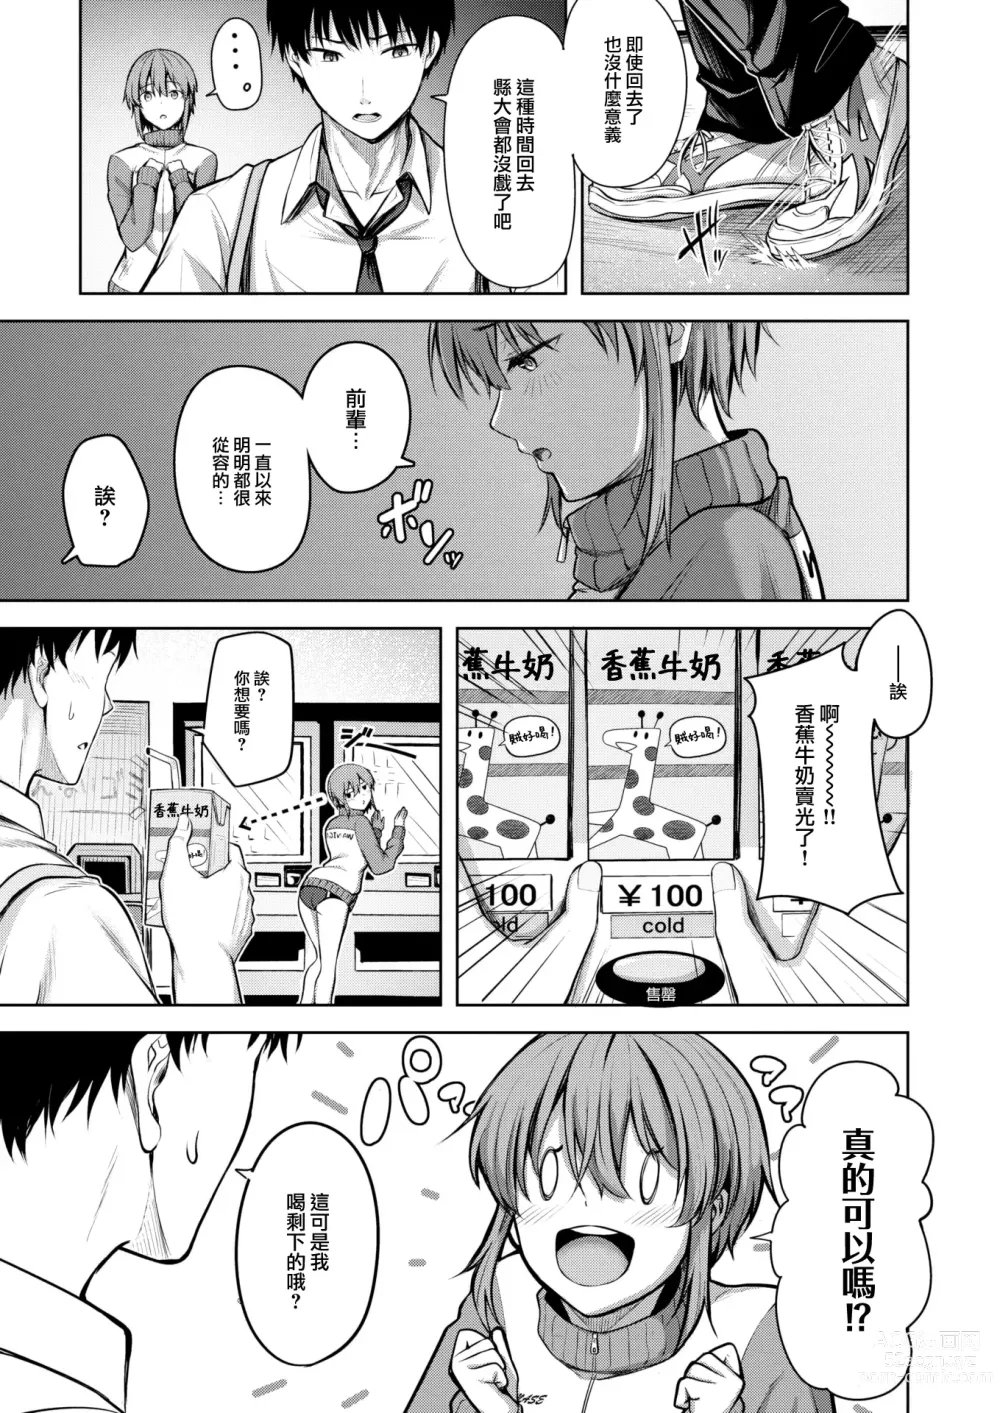 Page 4 of manga Start line